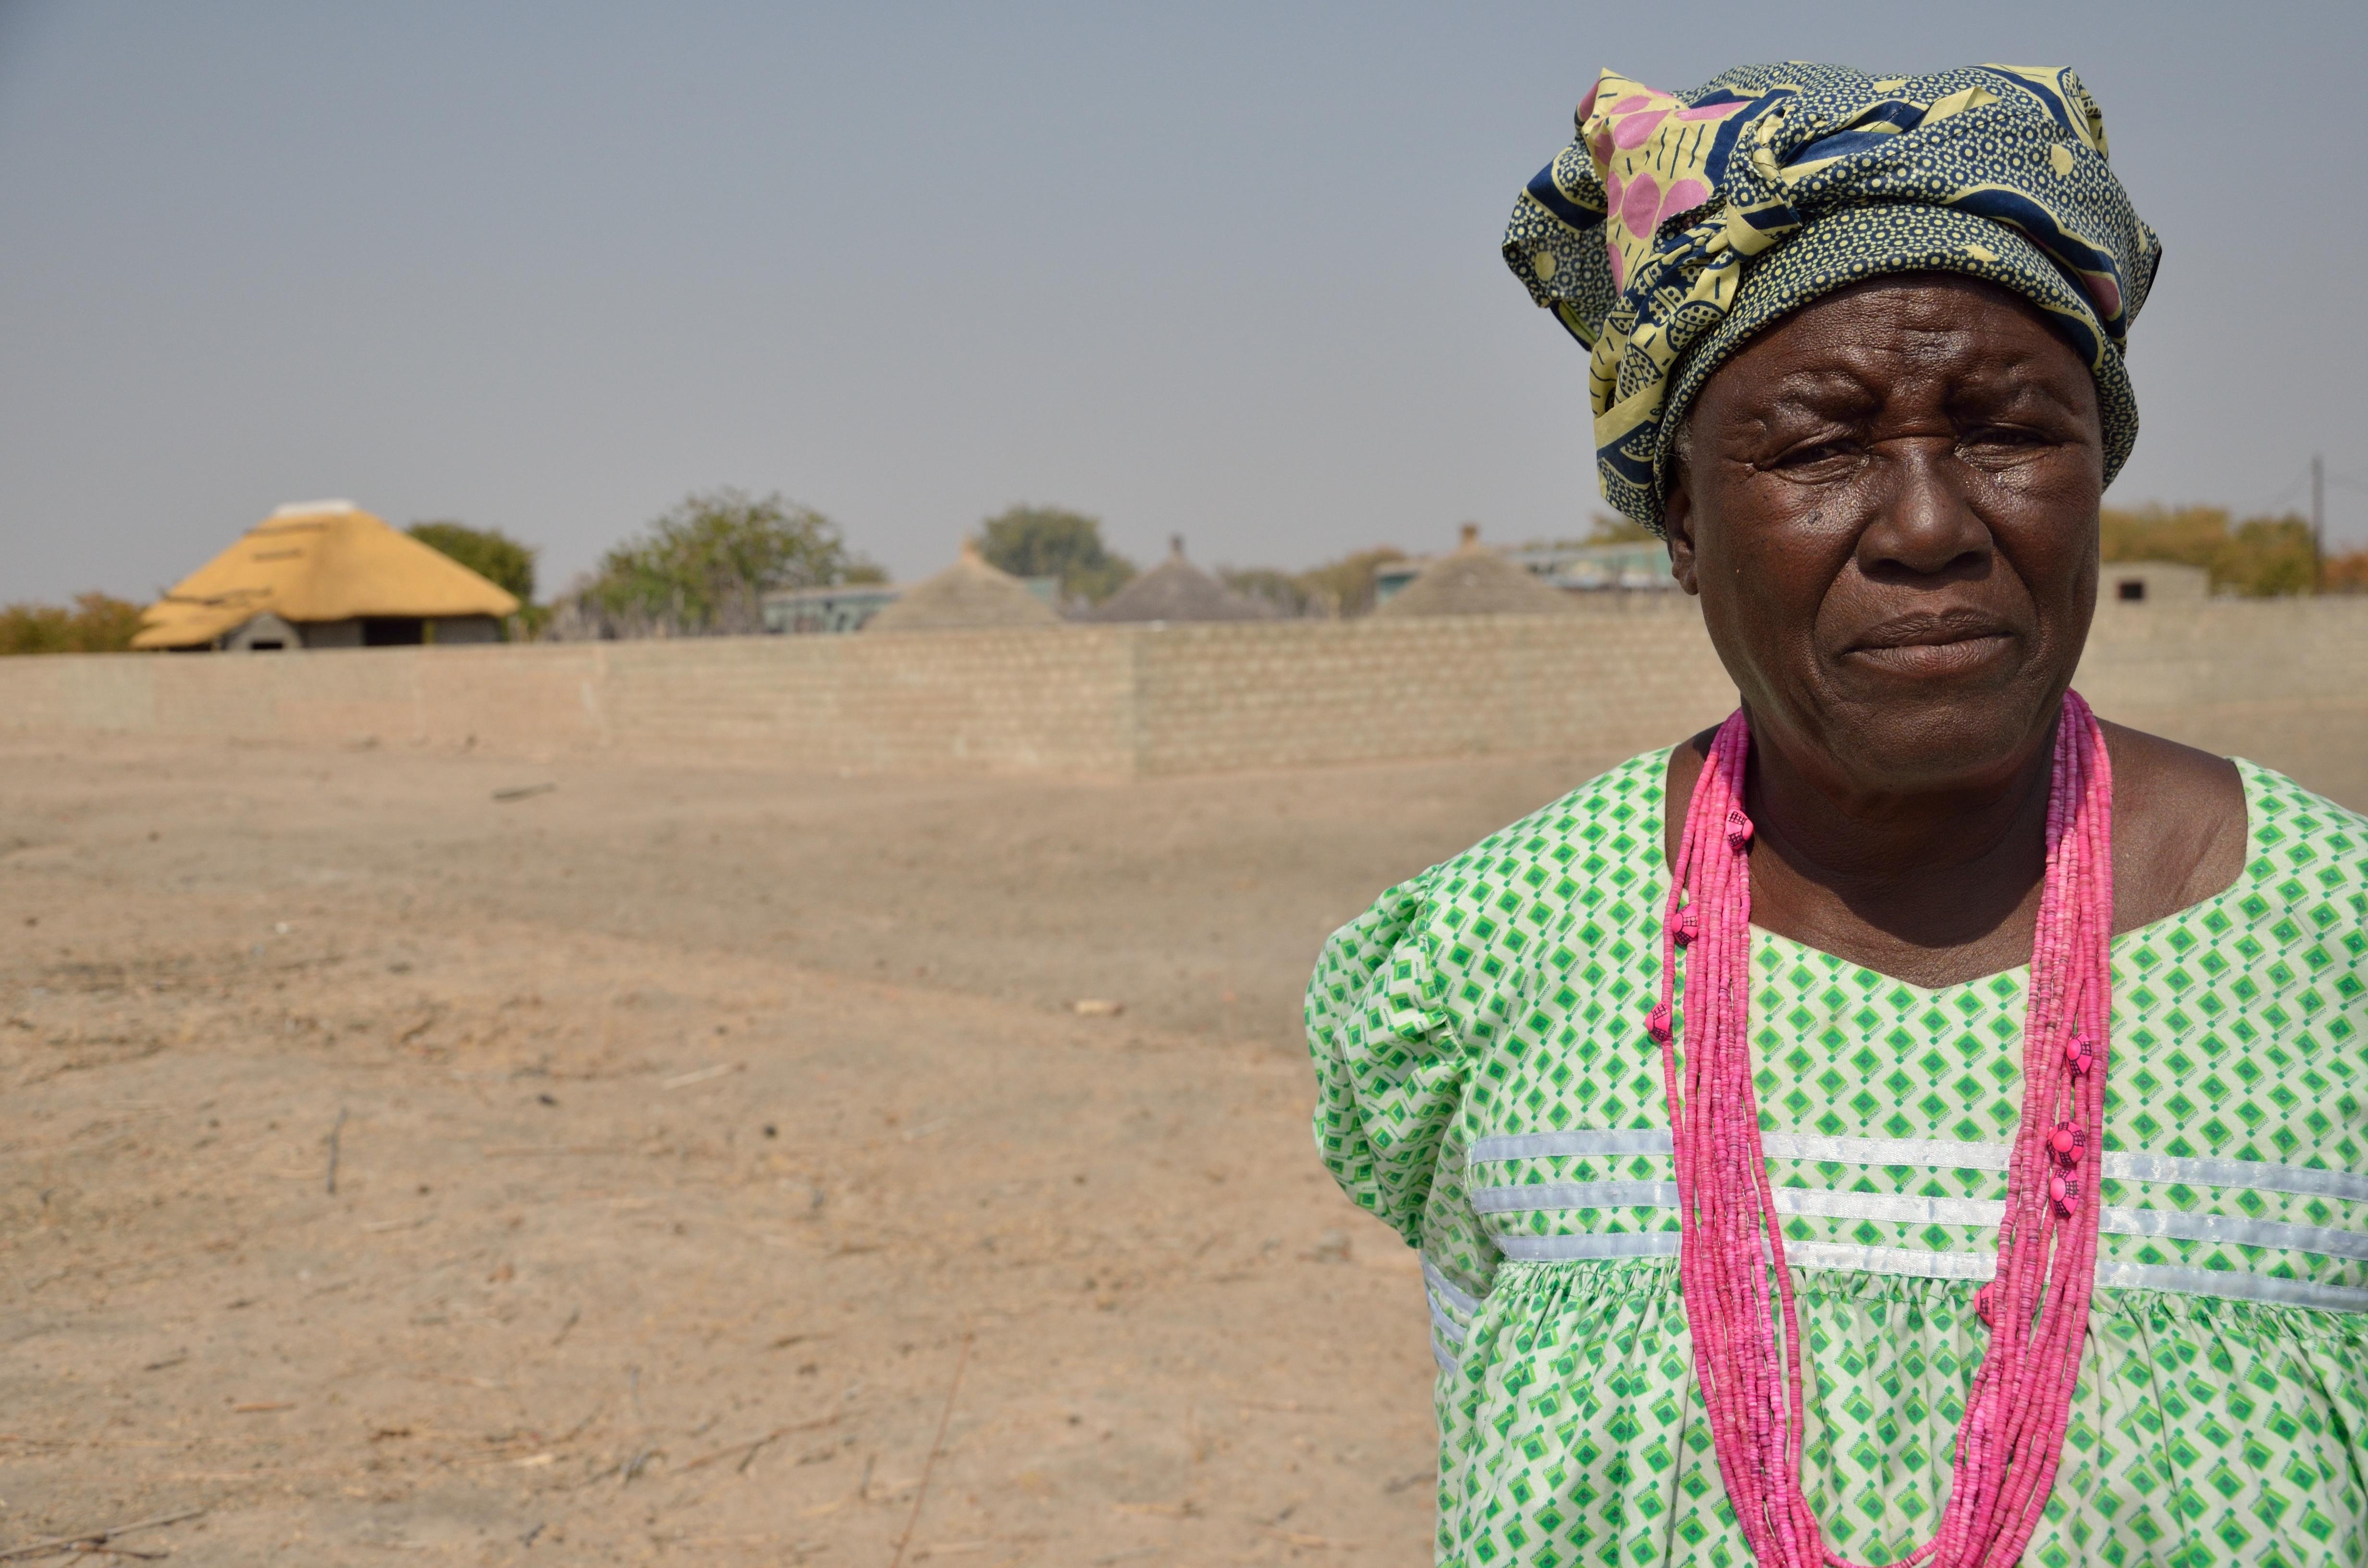 âThe worst drought I have ever seen.â Tusnerde worries for her village. Photo: LWF/ Thomas Ekelund